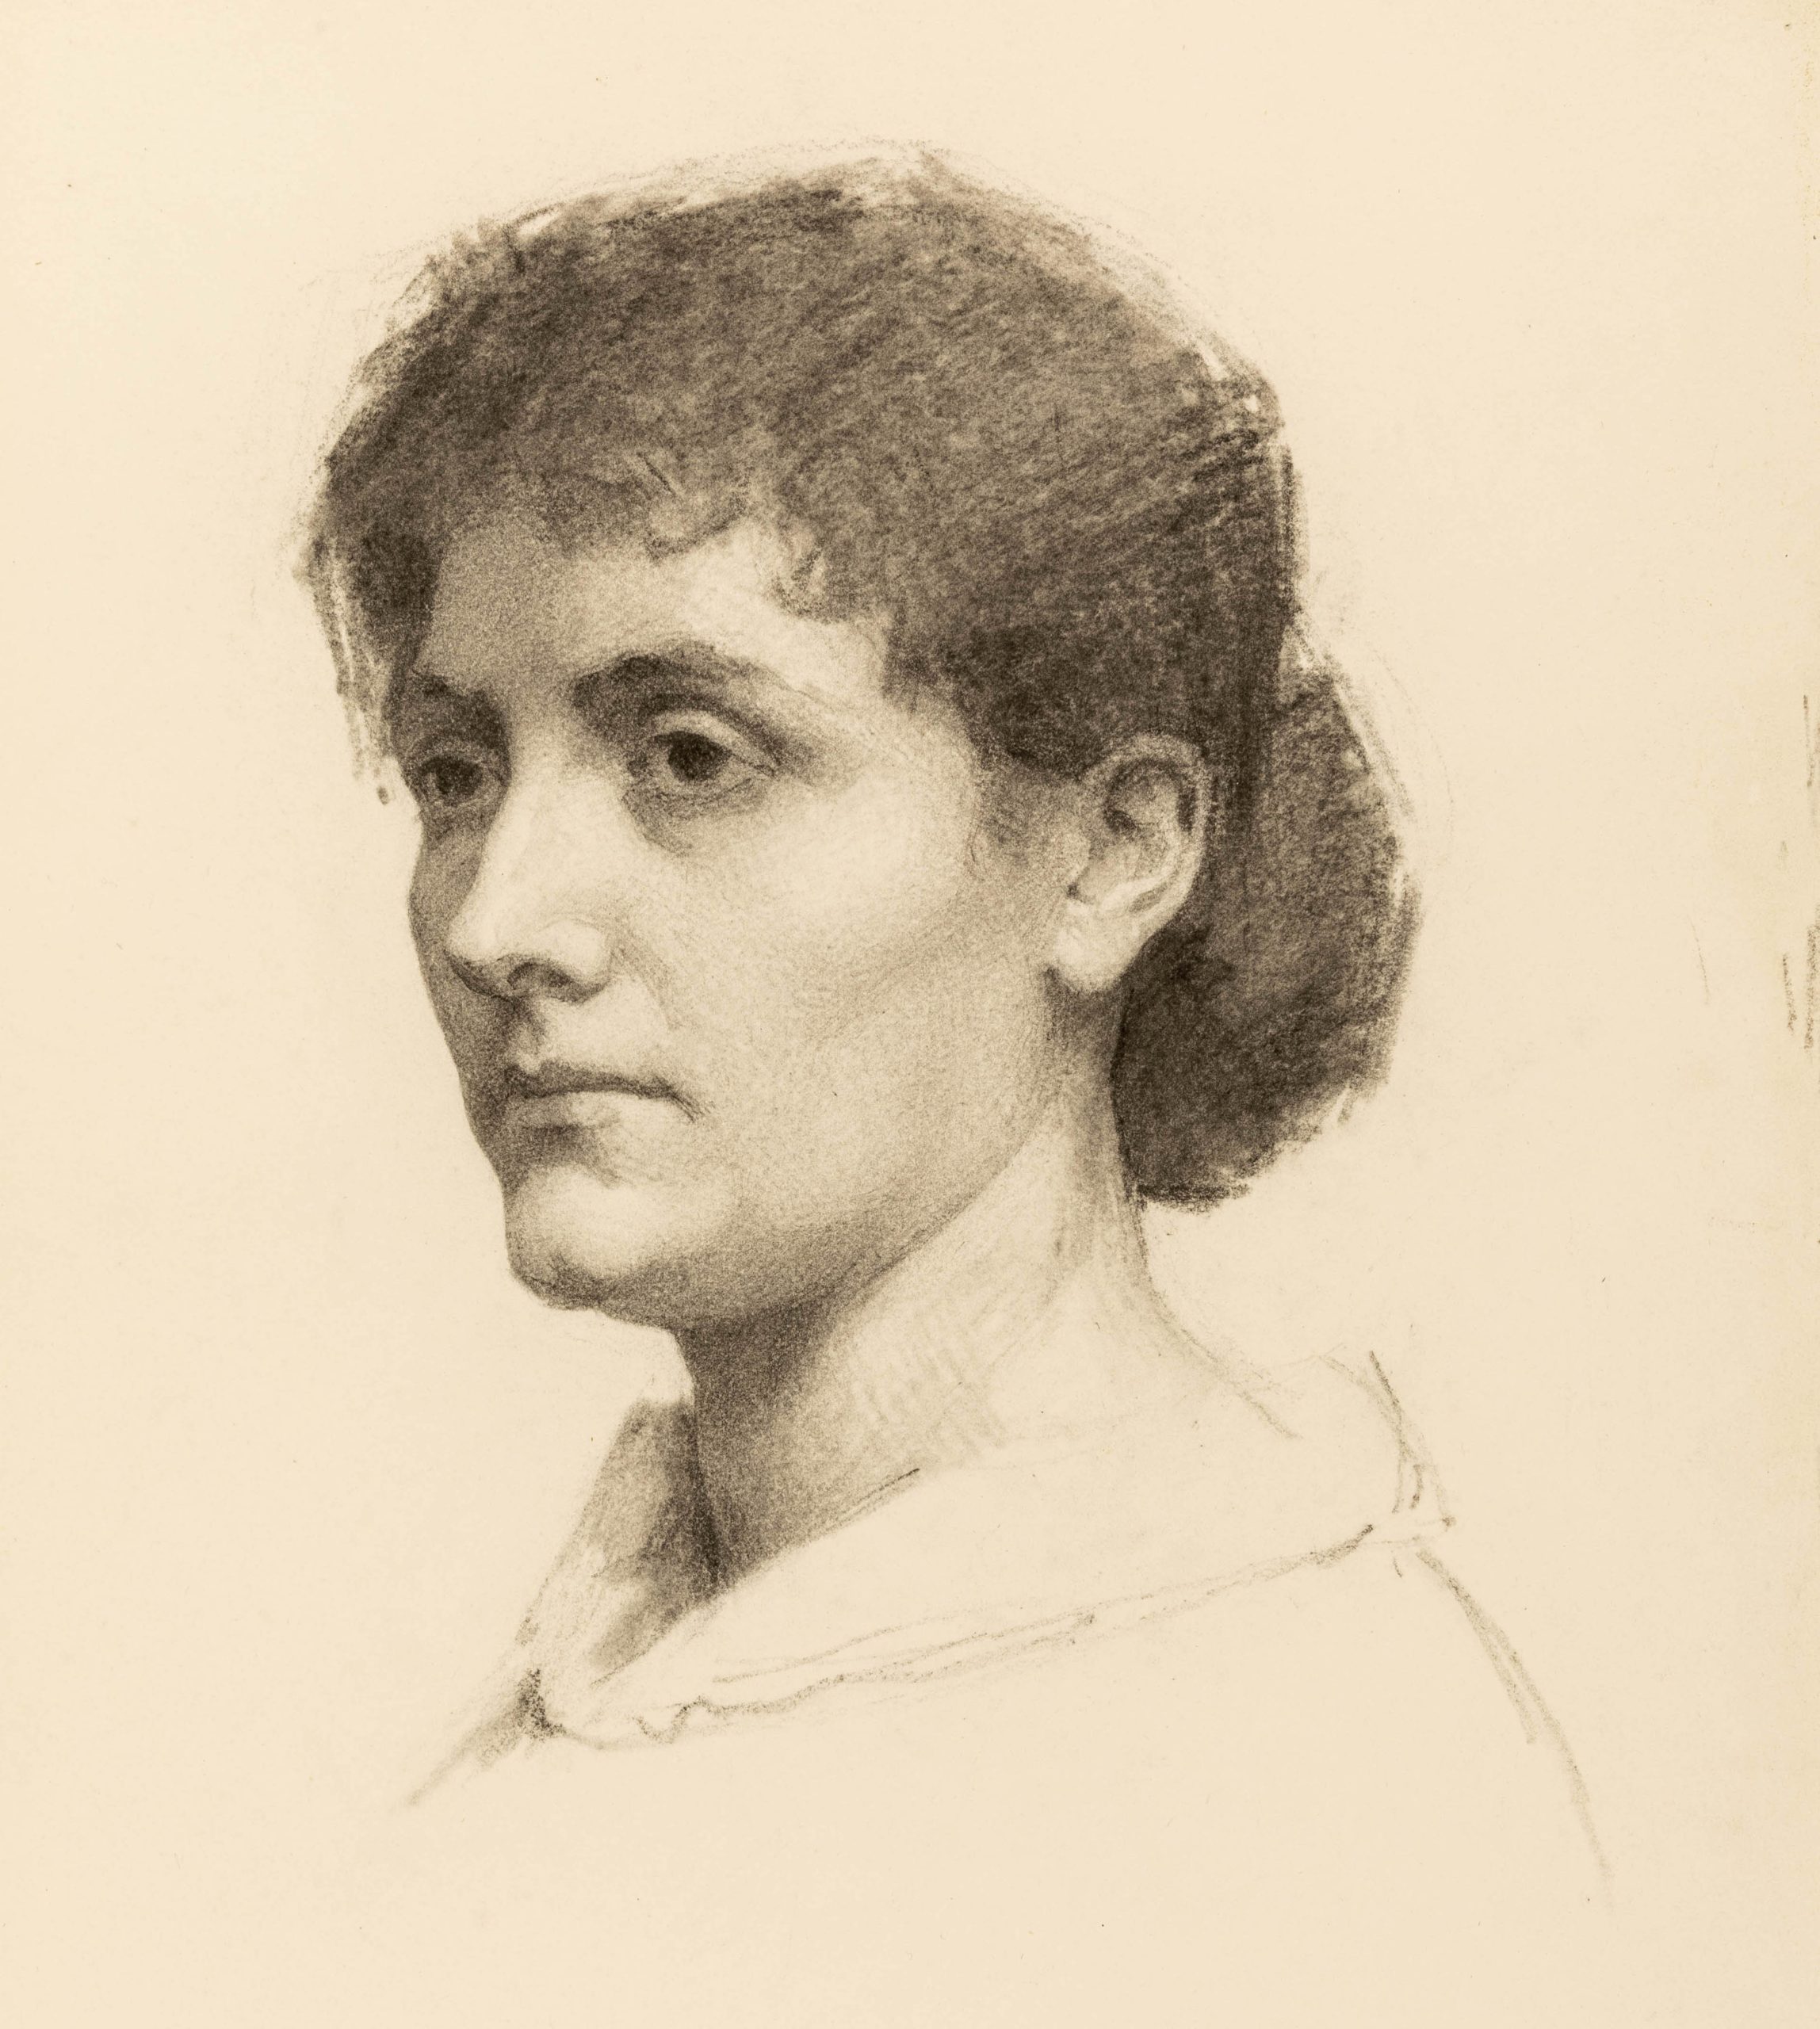 Bust-length portrait of a woman